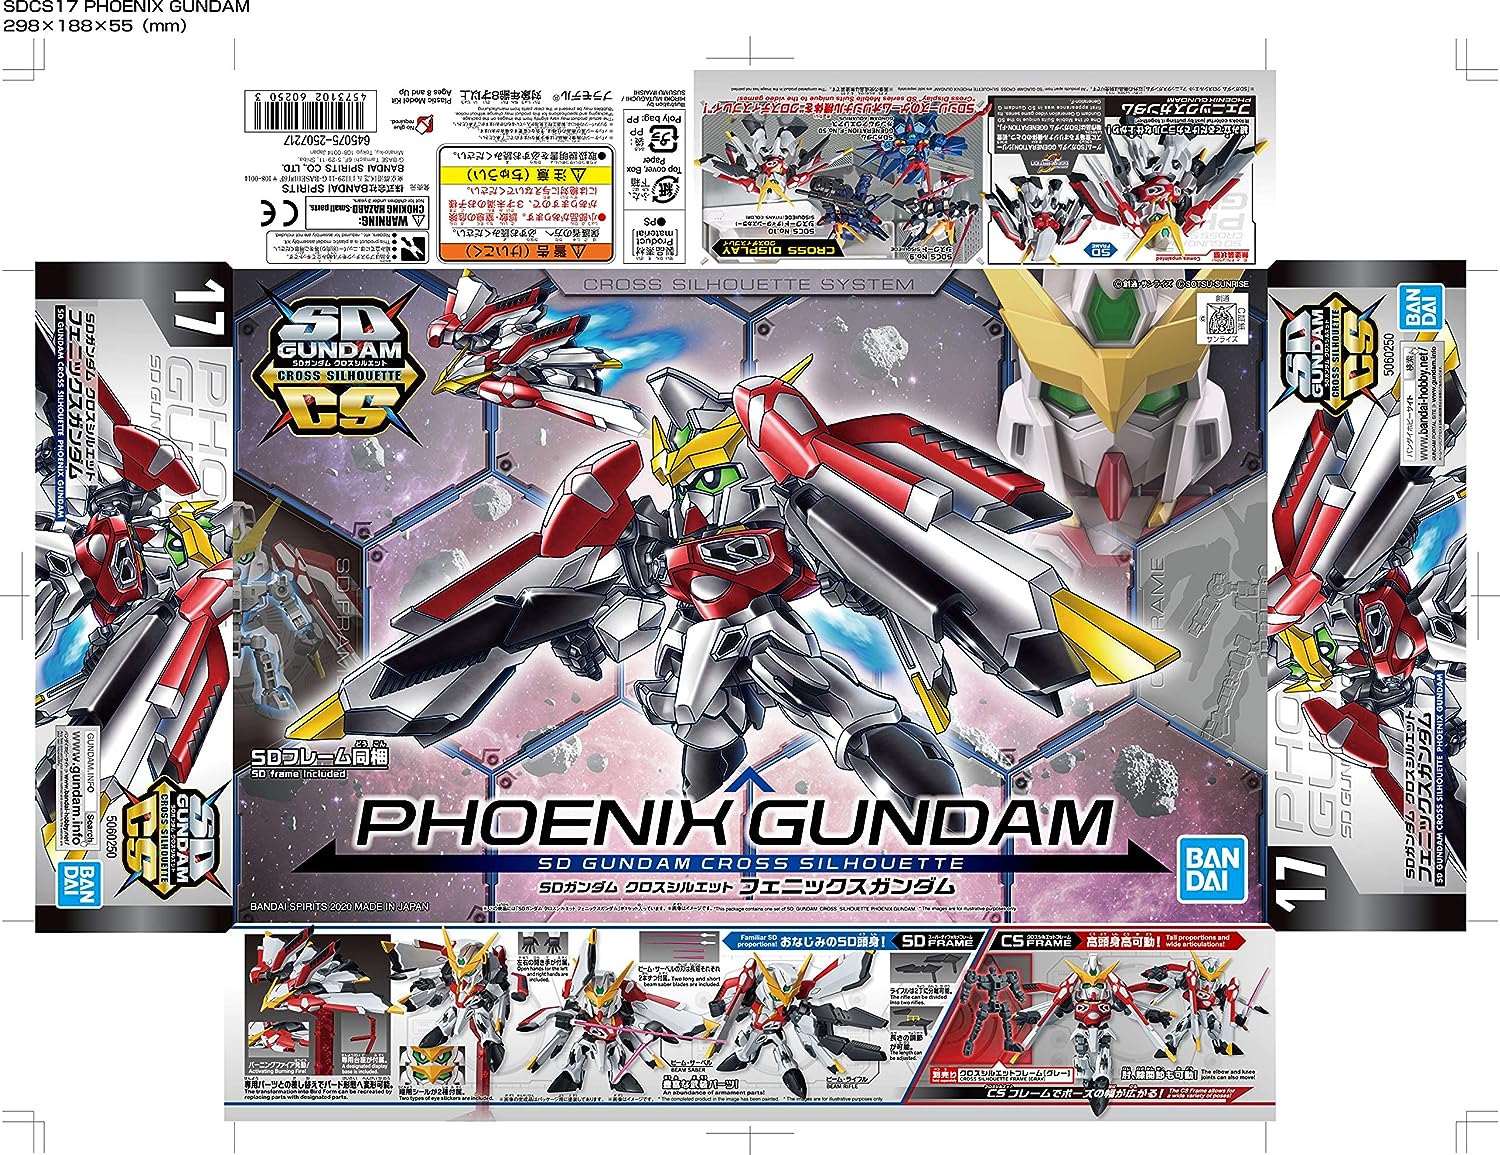 SD Gundam Cross Silhouette SDCS "SD Gundam G Generation" Phoenix Gundam | animota